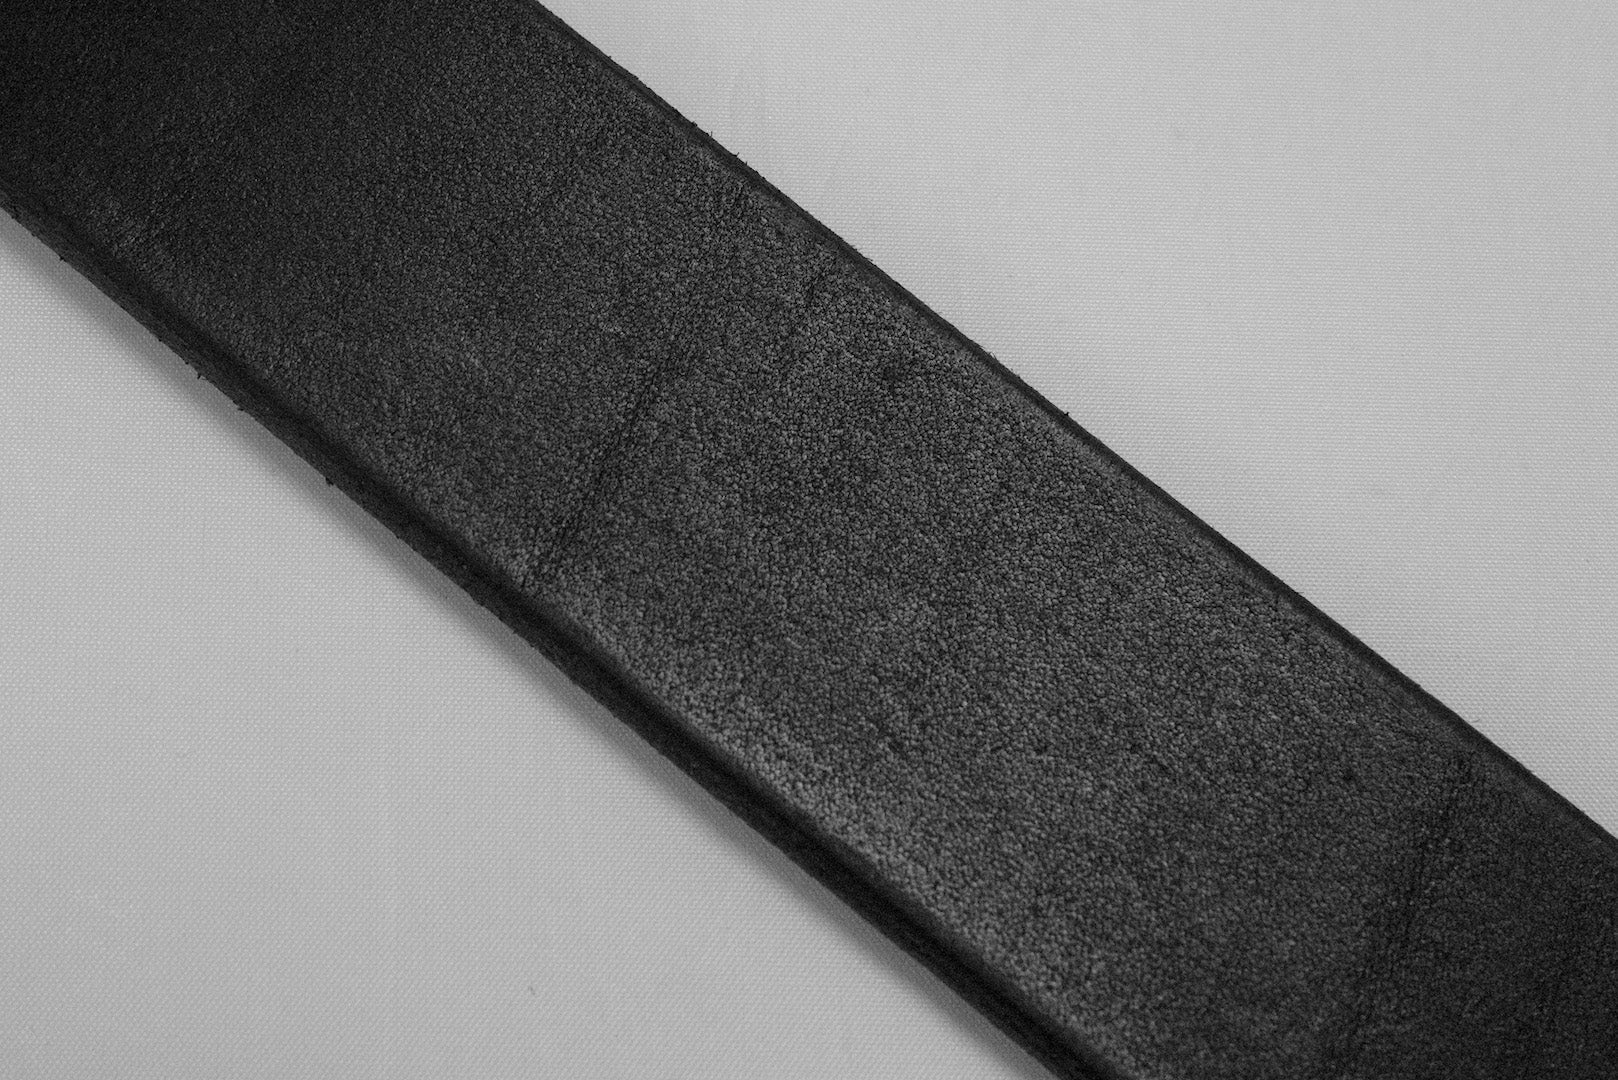 Stevenson Overall Co. "Garrison" Cowhide Belt (Black)